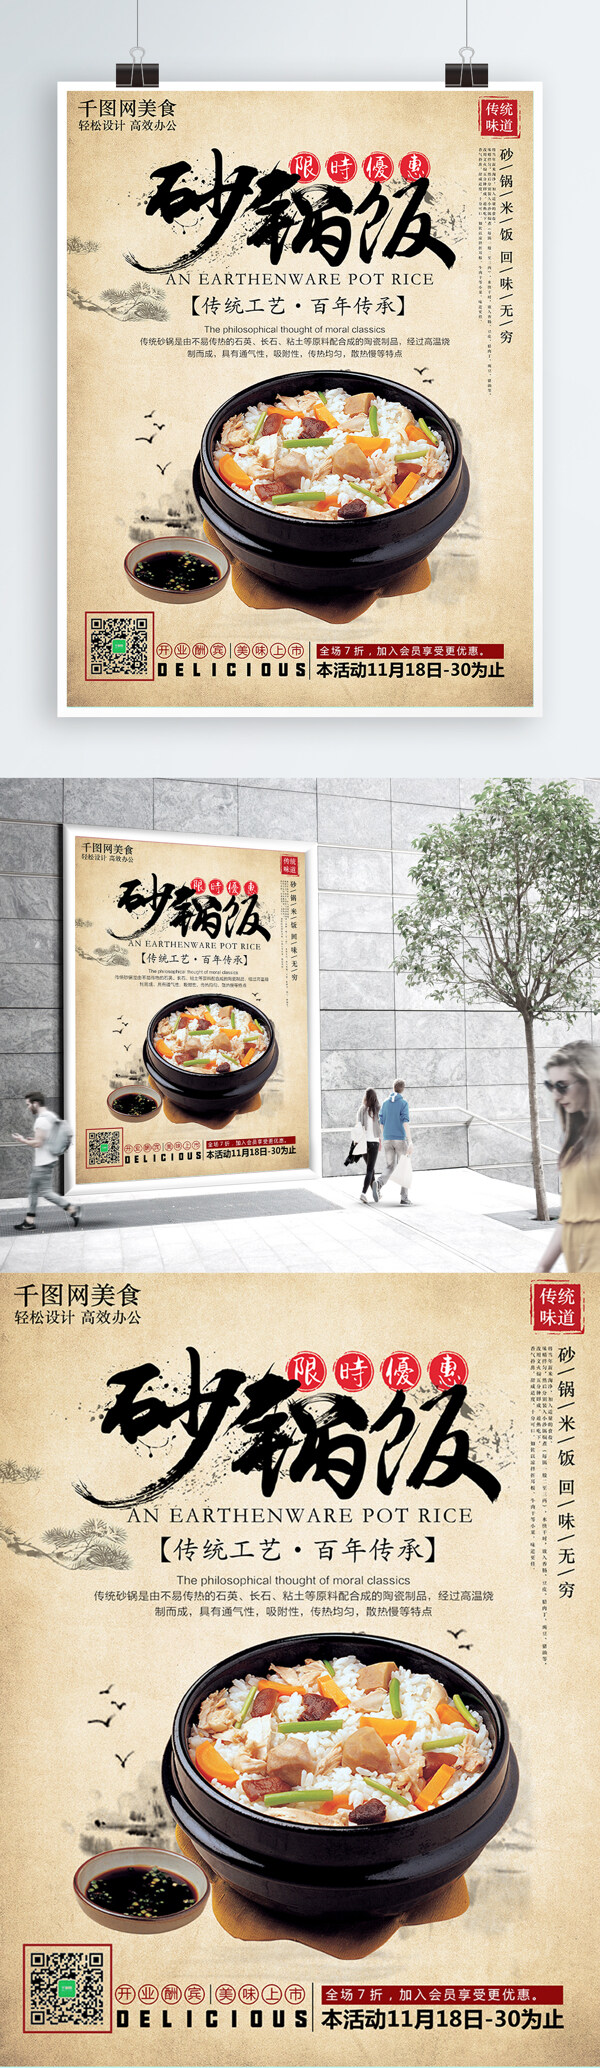 复古风格美食砂锅米饭海报